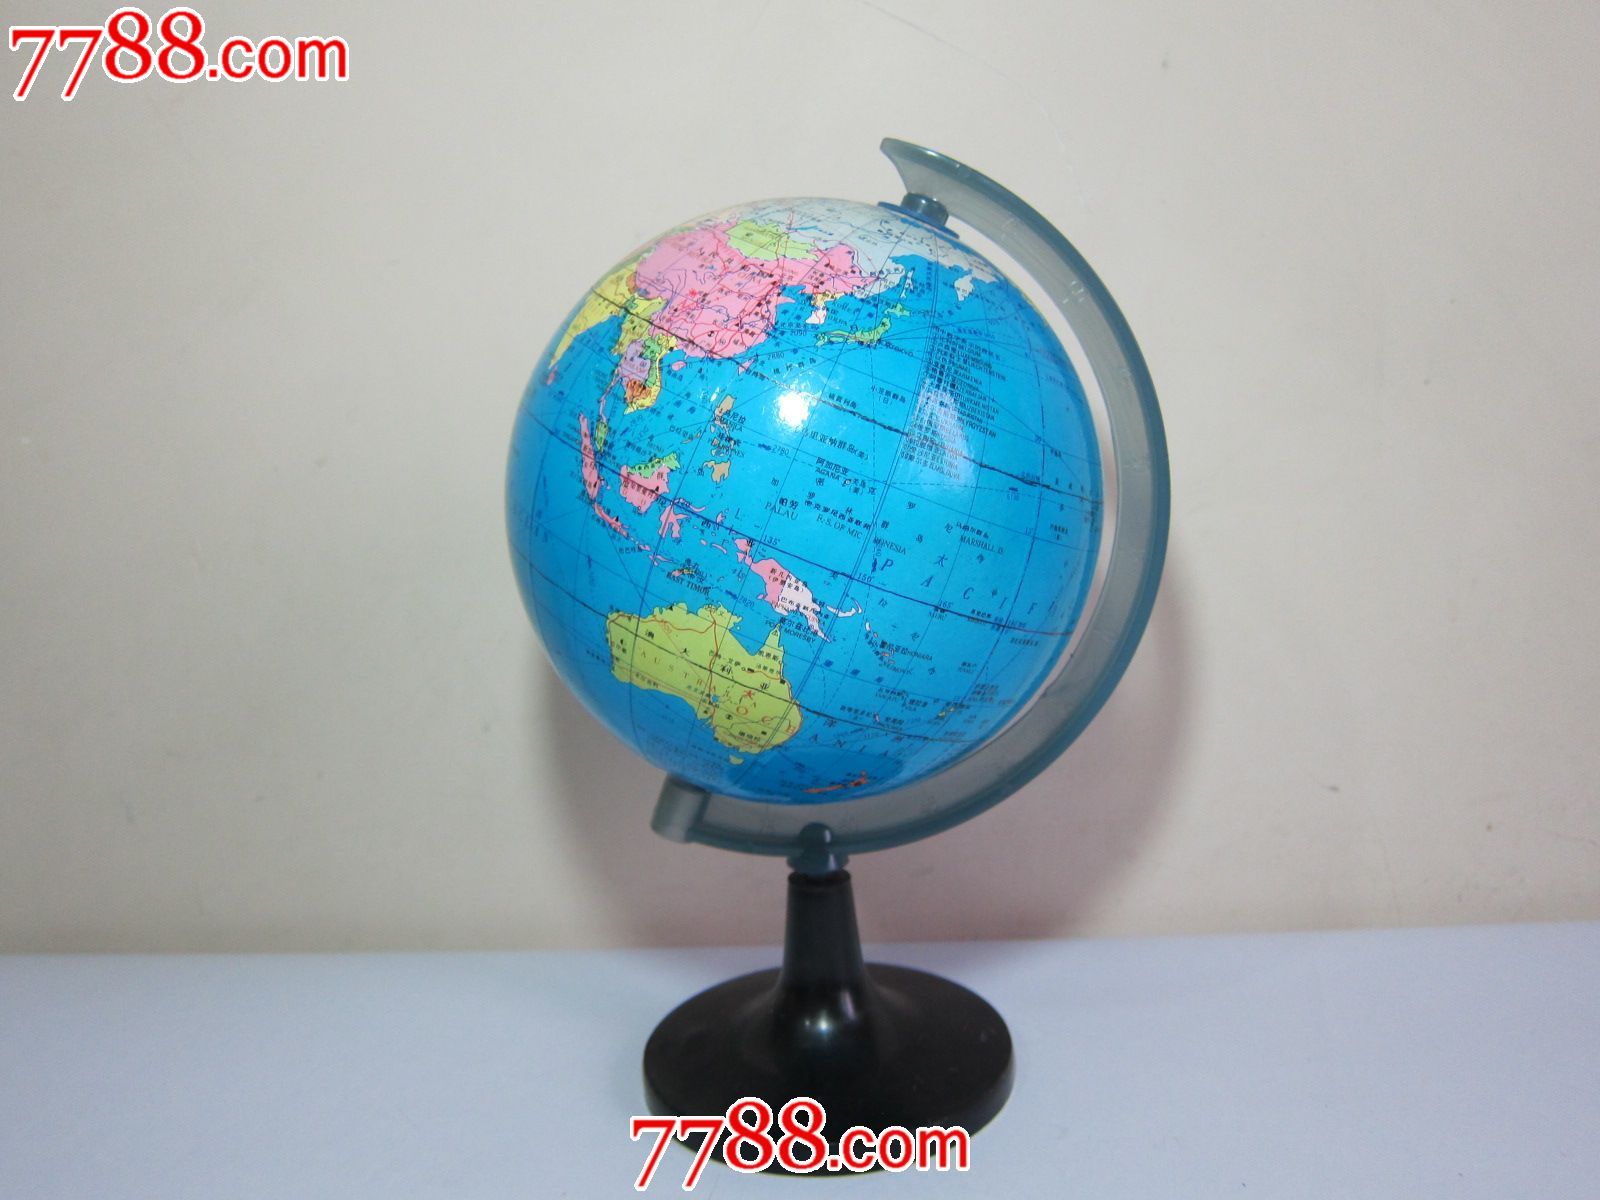 地球仪-价格:50元-se18666757-地球仪-零售-中国收藏热线